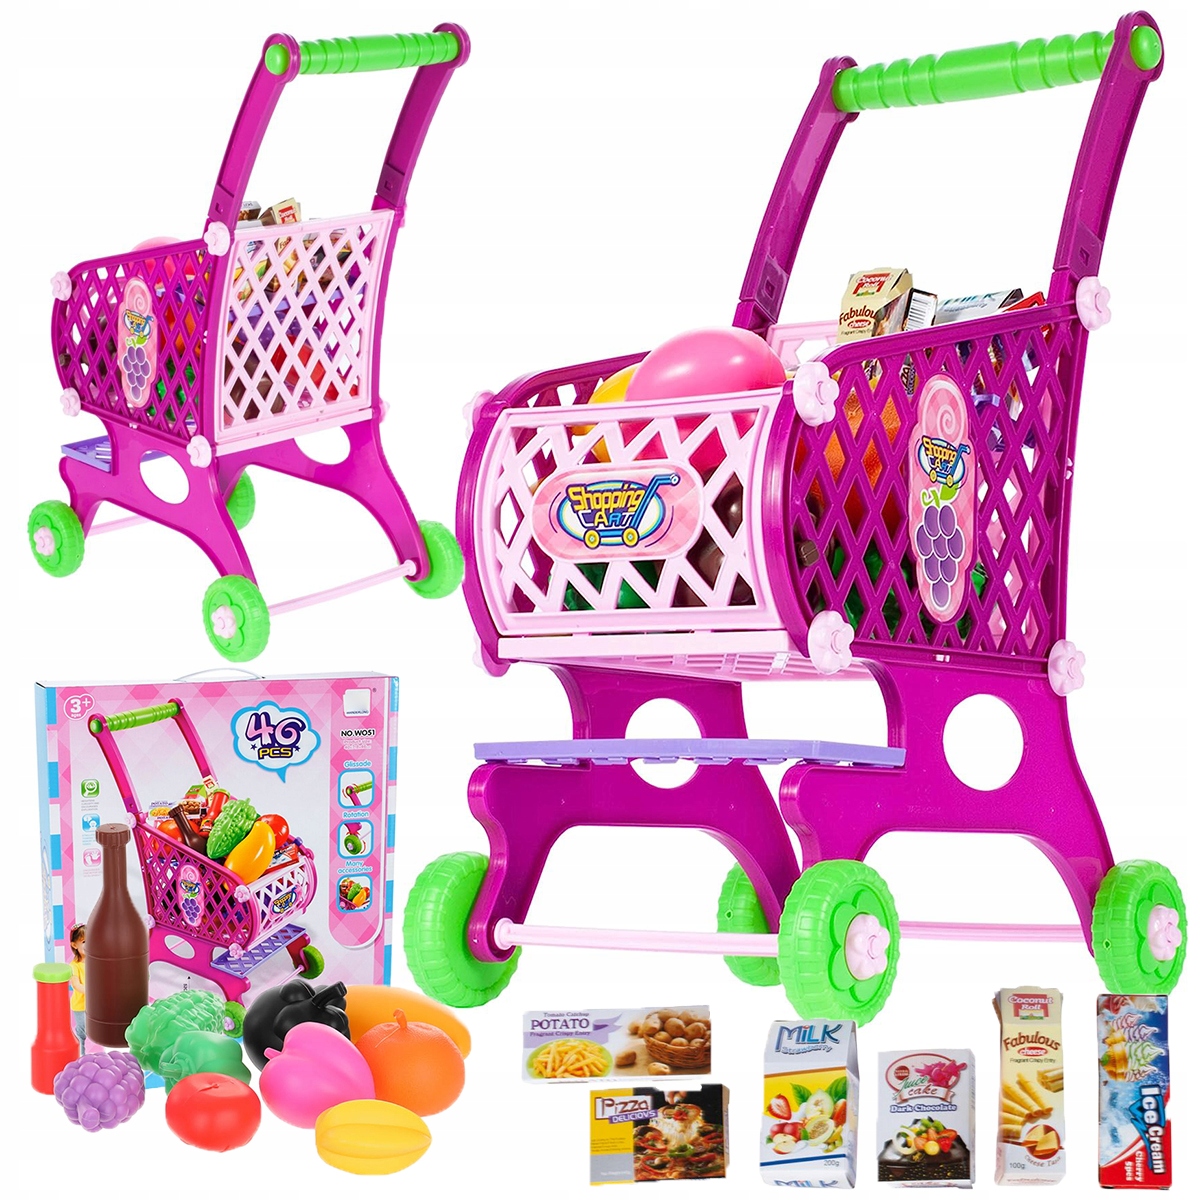 Wika - Zabawki dla dzieci - dziewczynek i chłopców - sklep internetowy -  Strona 4 